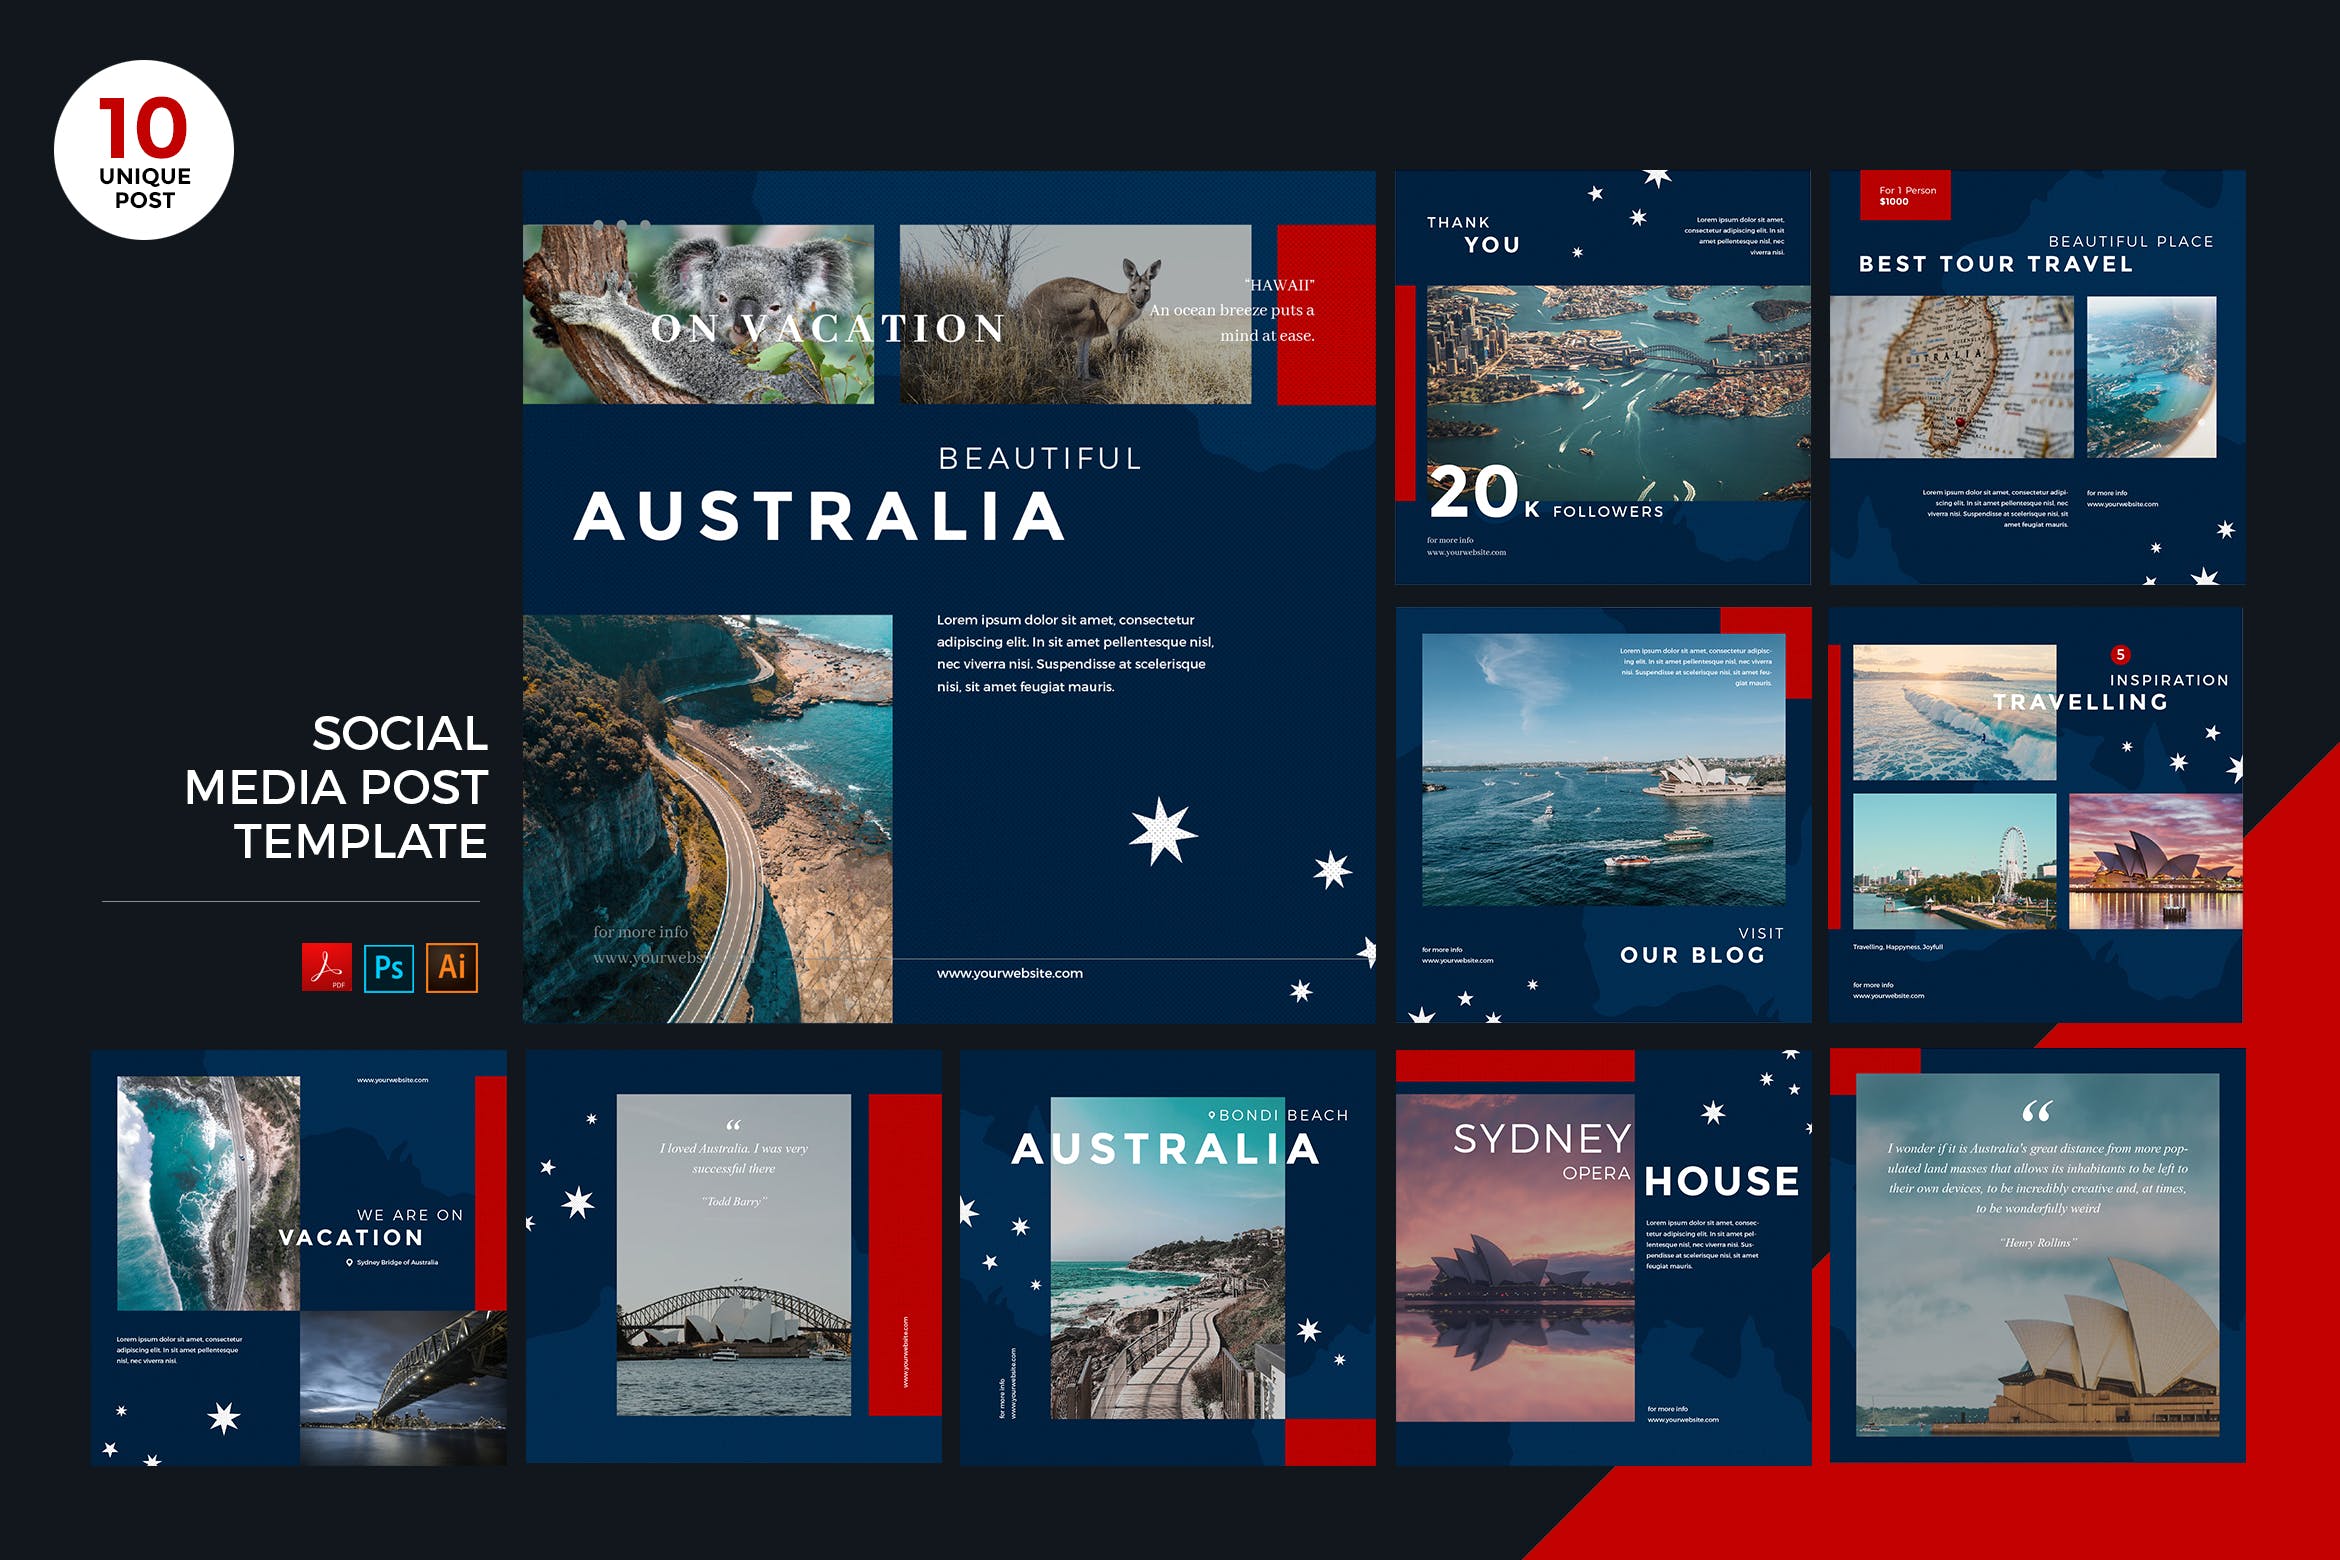 澳大利亚旅游推广社交媒体PSD&AI模板素材库精选 Travel To Australia Social Media Kit PSD & AI插图